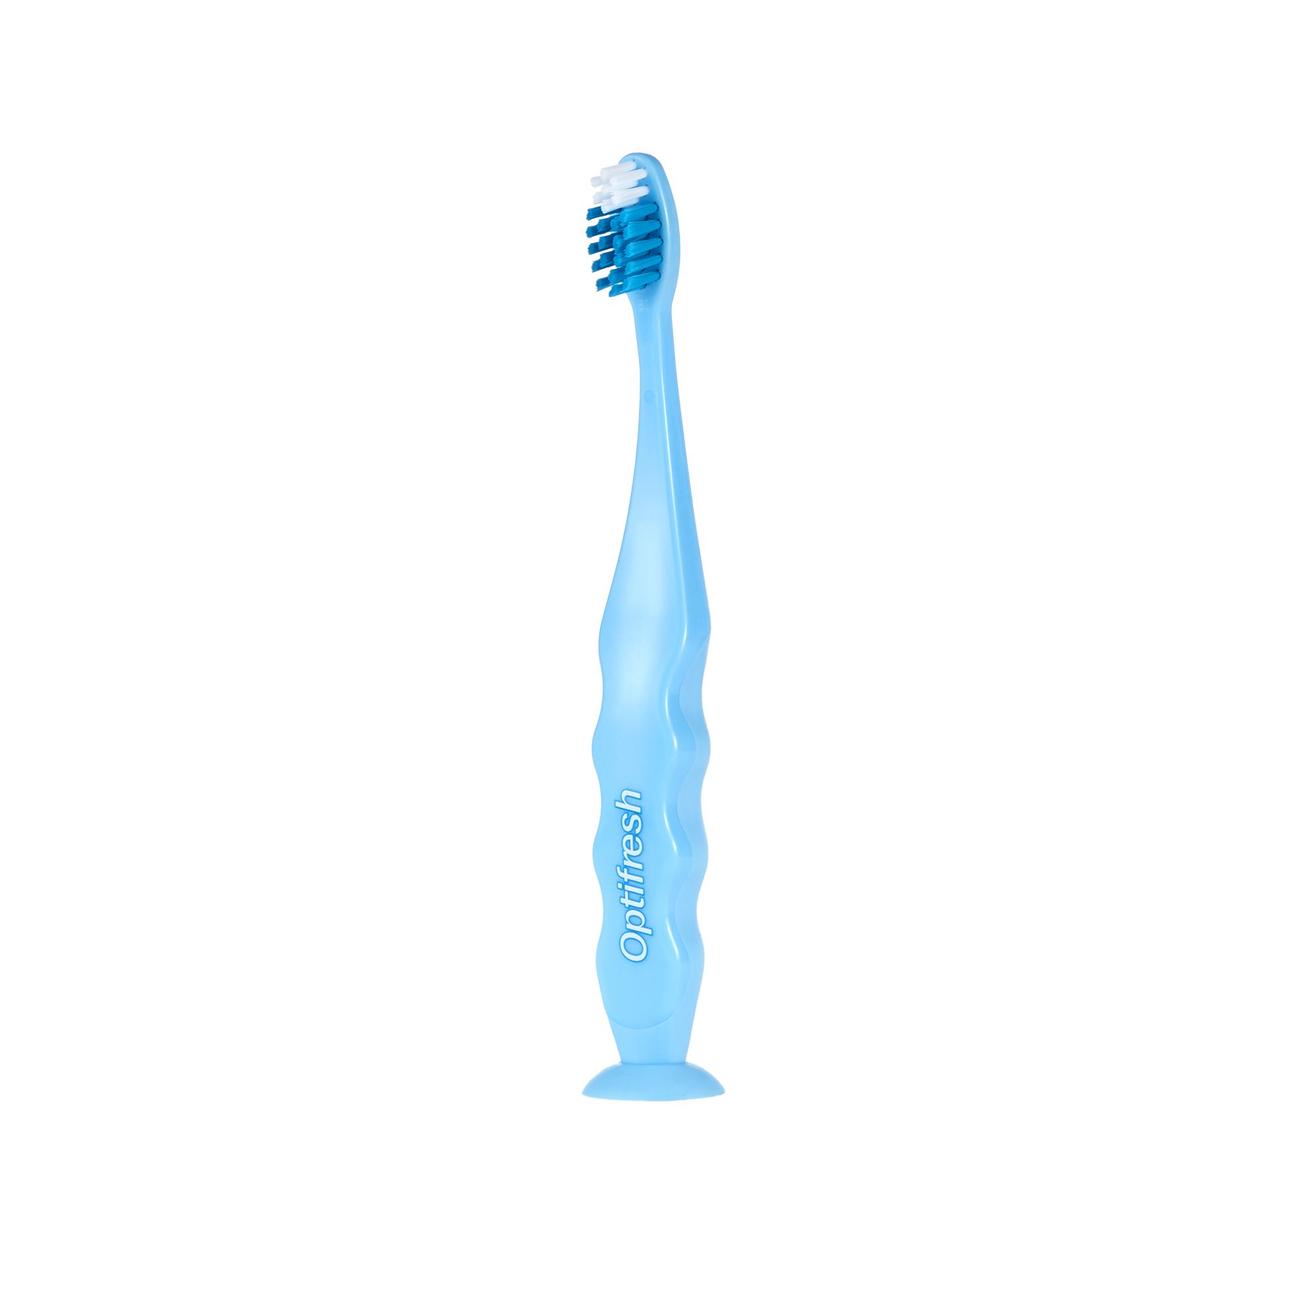 Tilbud: Kids Soft Toothbrush - Blue kr 35 på Oriflame